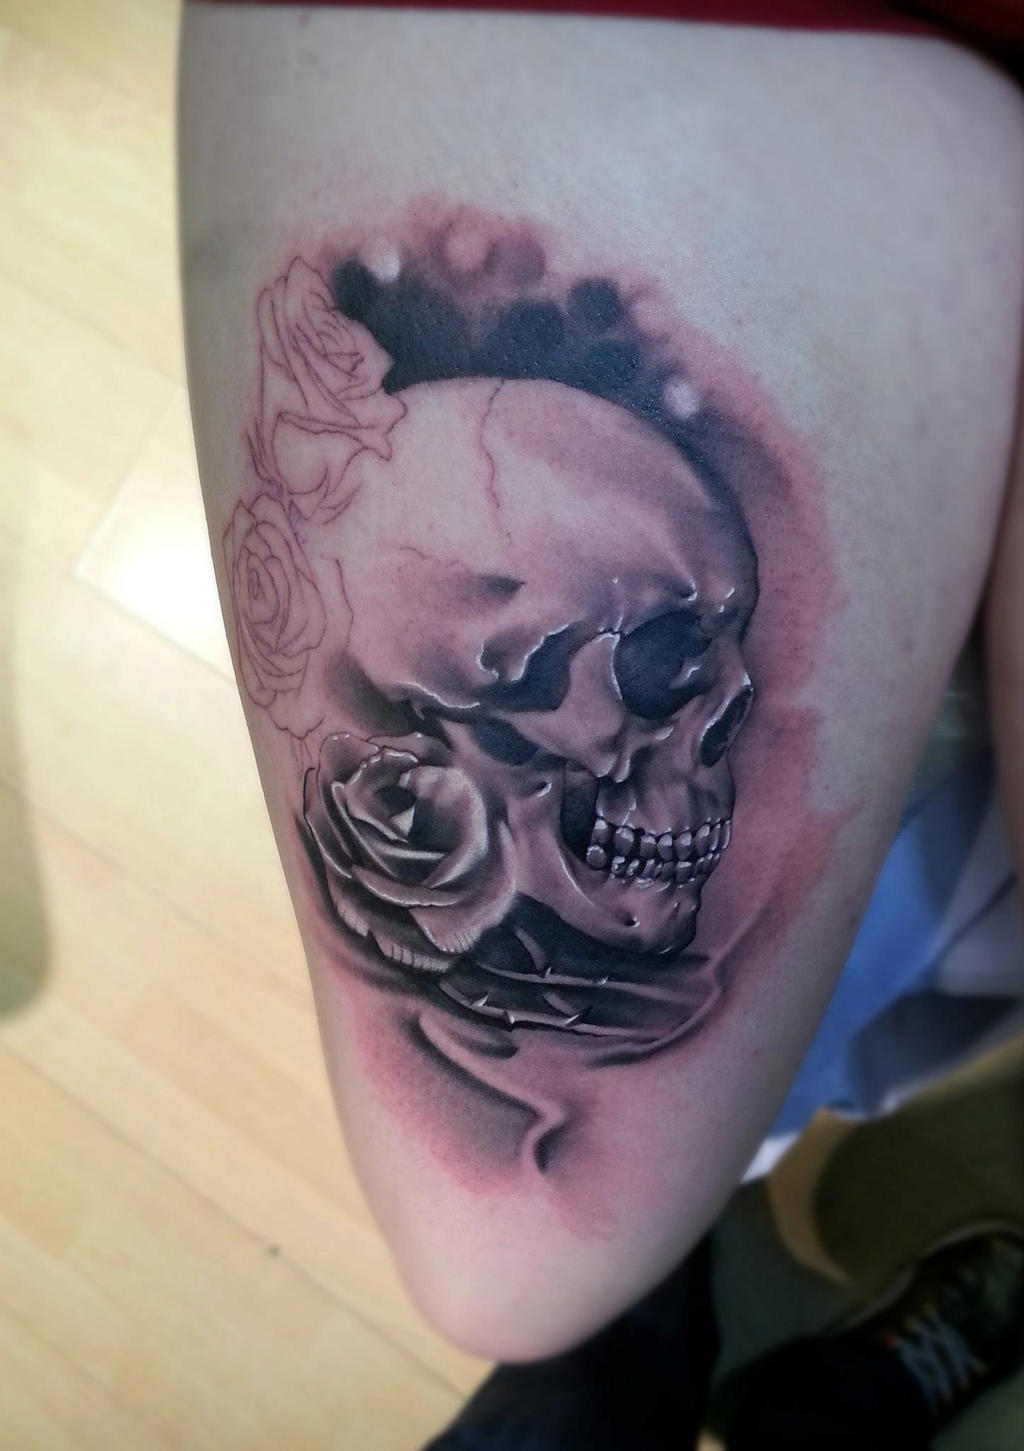 Skull and Roses tattoo by LittleRock3DD on DeviantArt